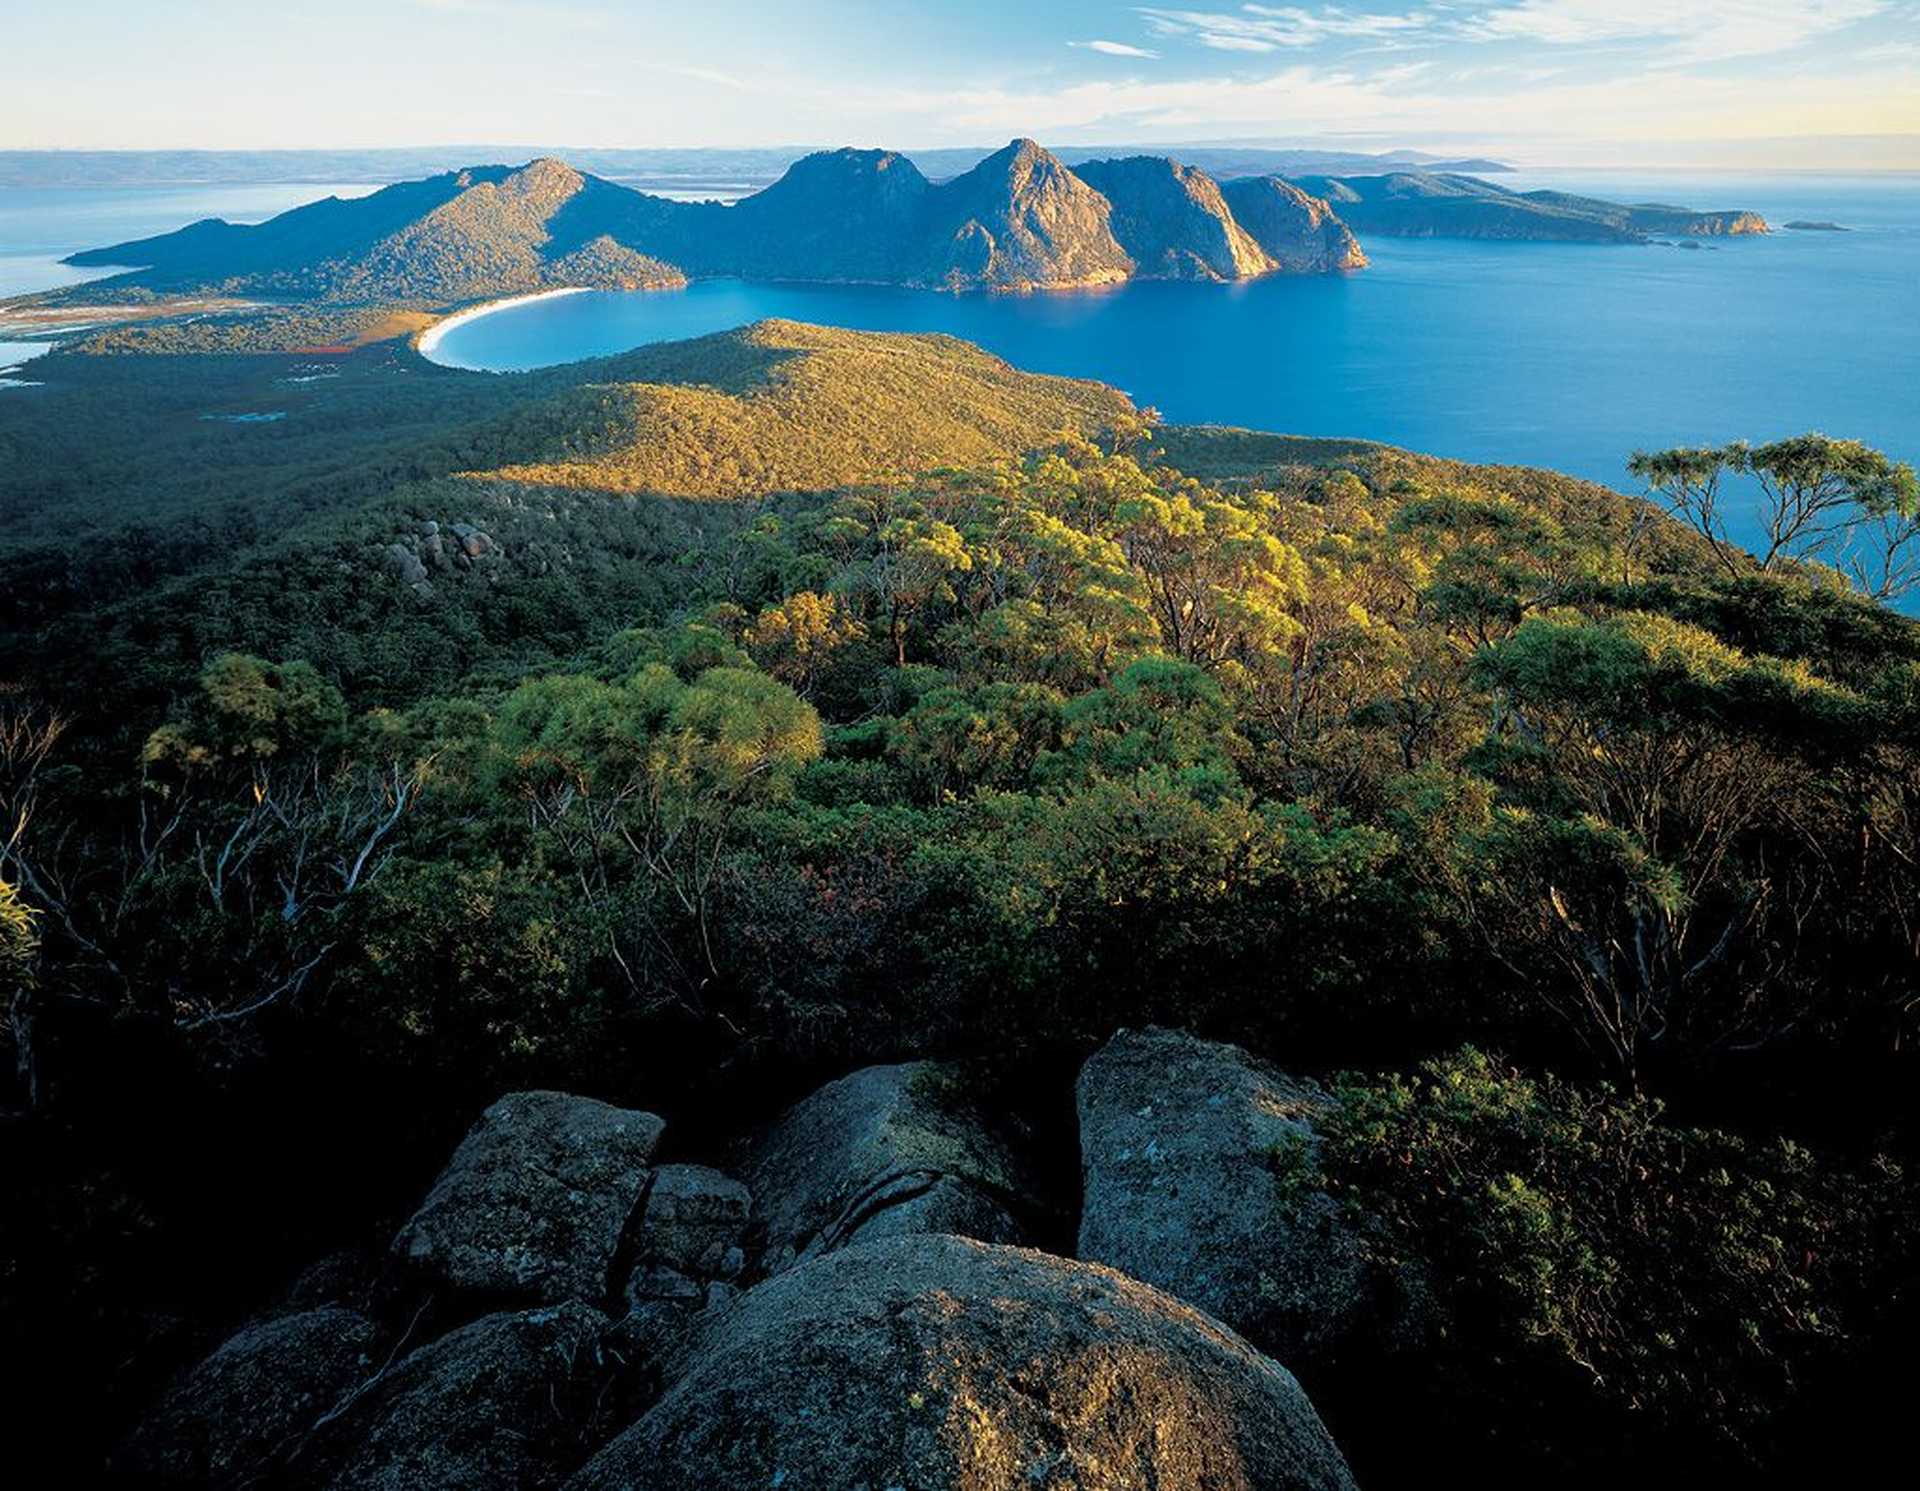 Voyage à thème : Les visages cachés de Tasmanie avec William Seager